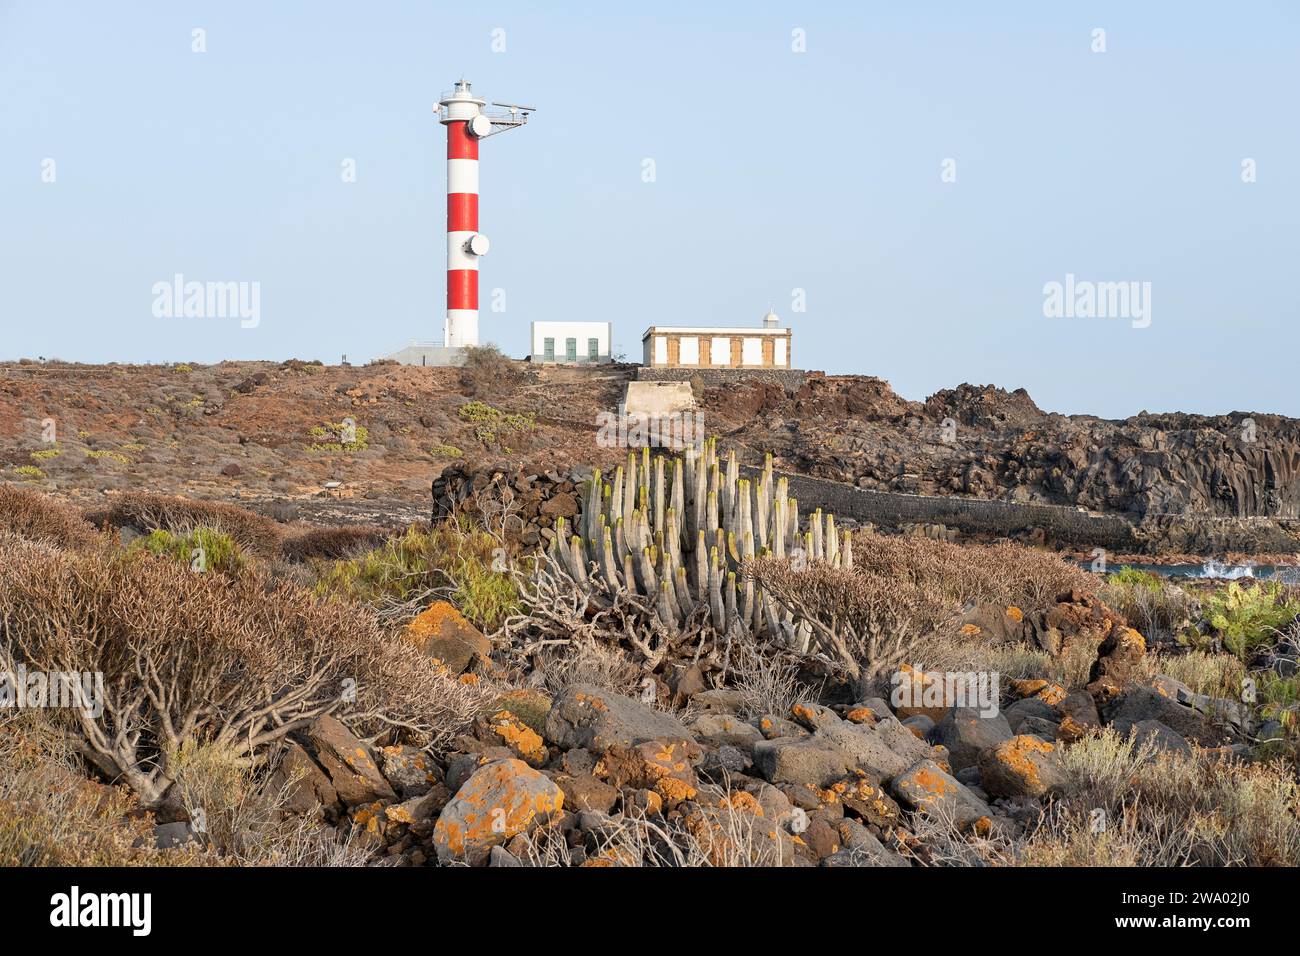 Faro Punta de Rasca, ein einsamer Leuchtturm in der Wildnis, zwischen dem zerklüfteten vulkanischen Gelände, das von der einheimischen Vegetation bedeckt ist Stockfoto